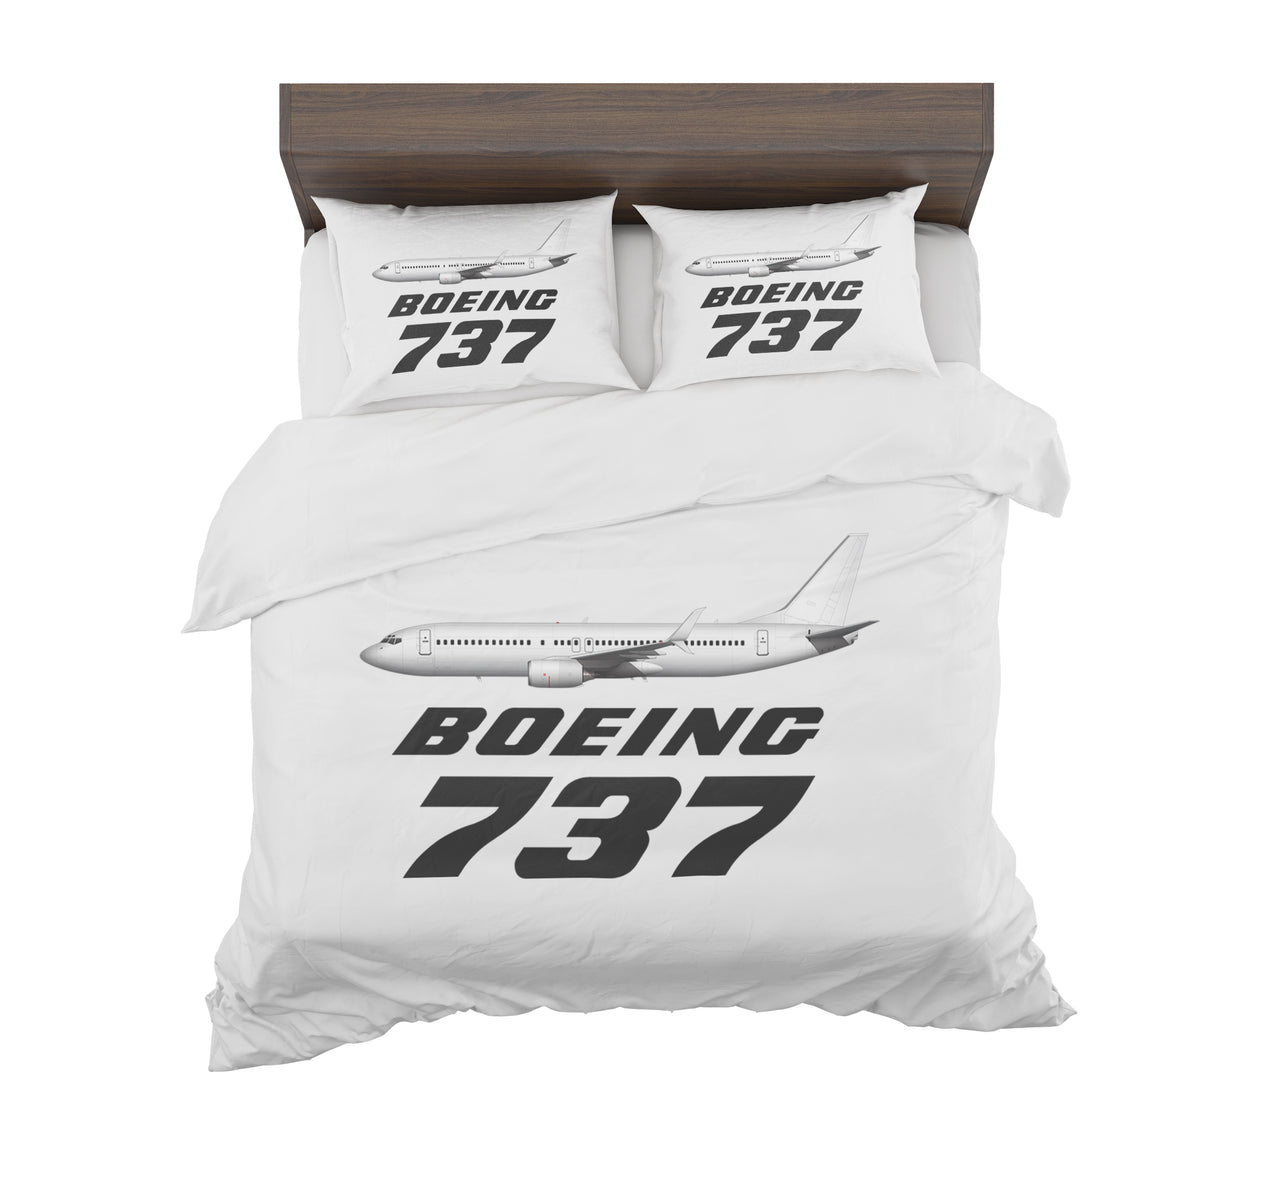 The Boeing 737 Designed Bedding Sets